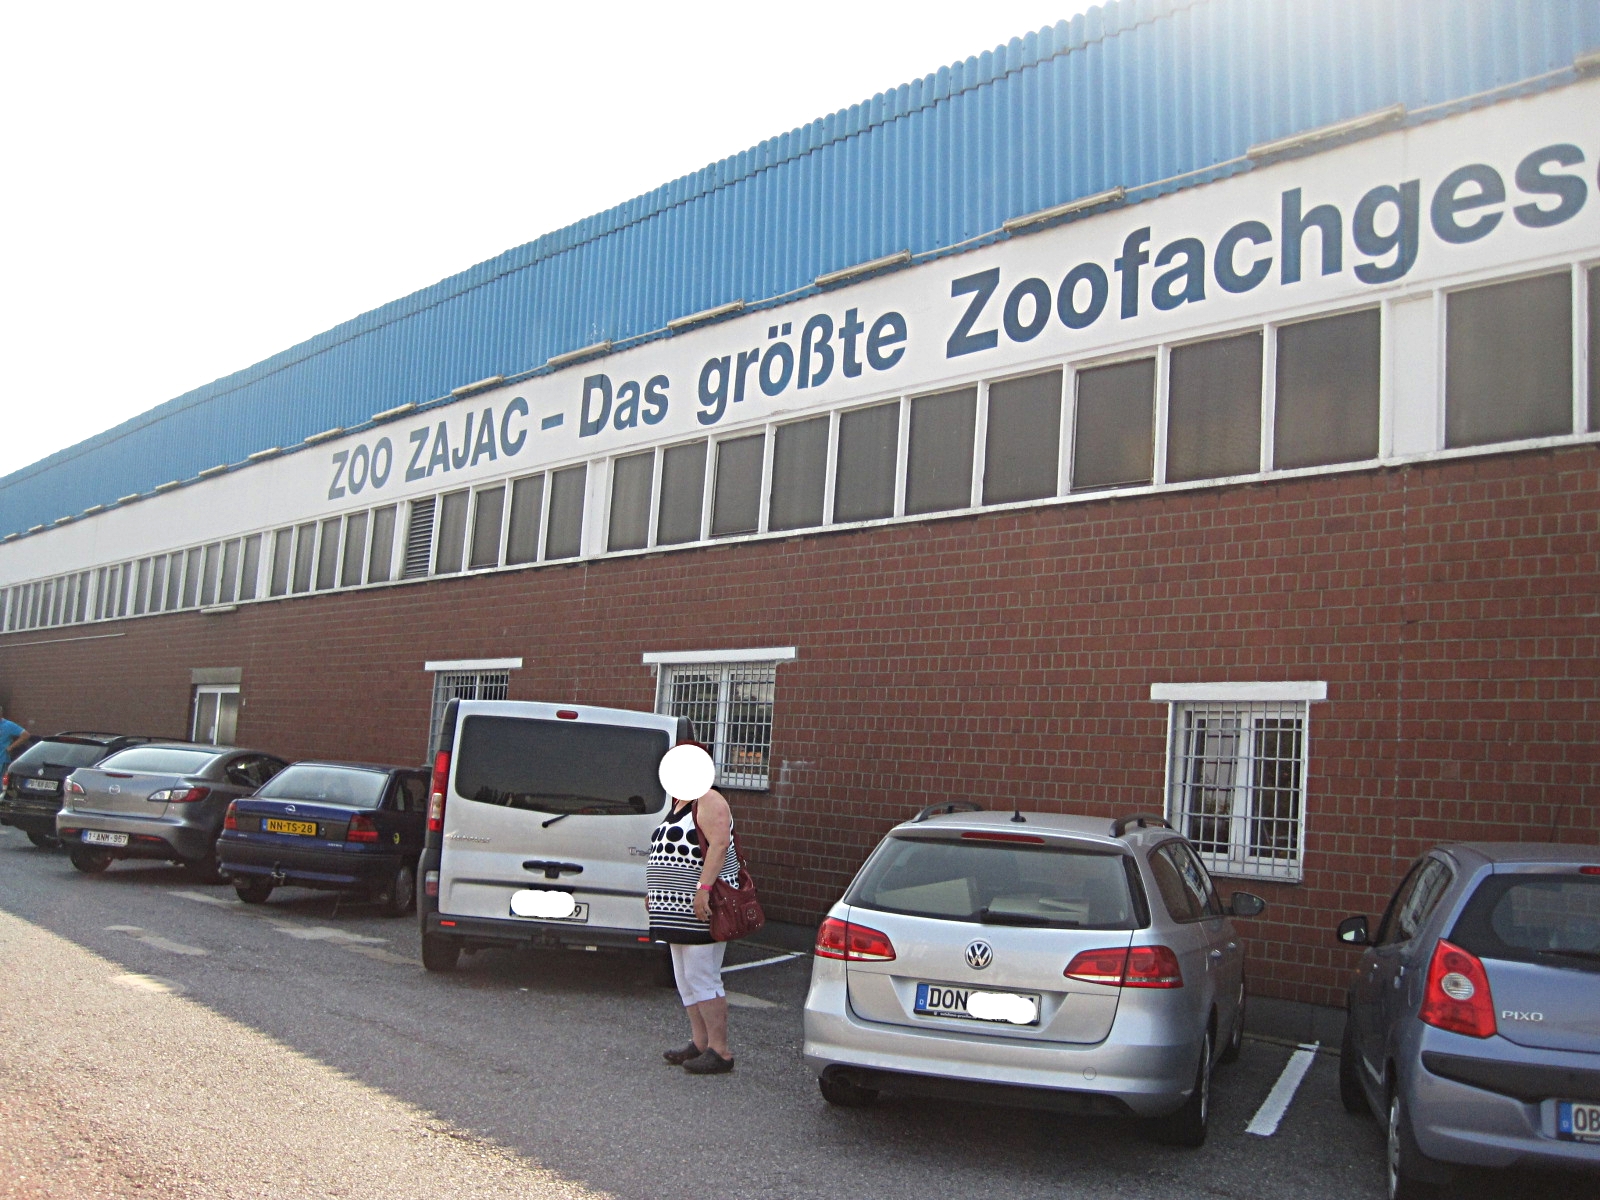 Zoo Zajac - weltgrößte Zoogeschäft in Duisburg